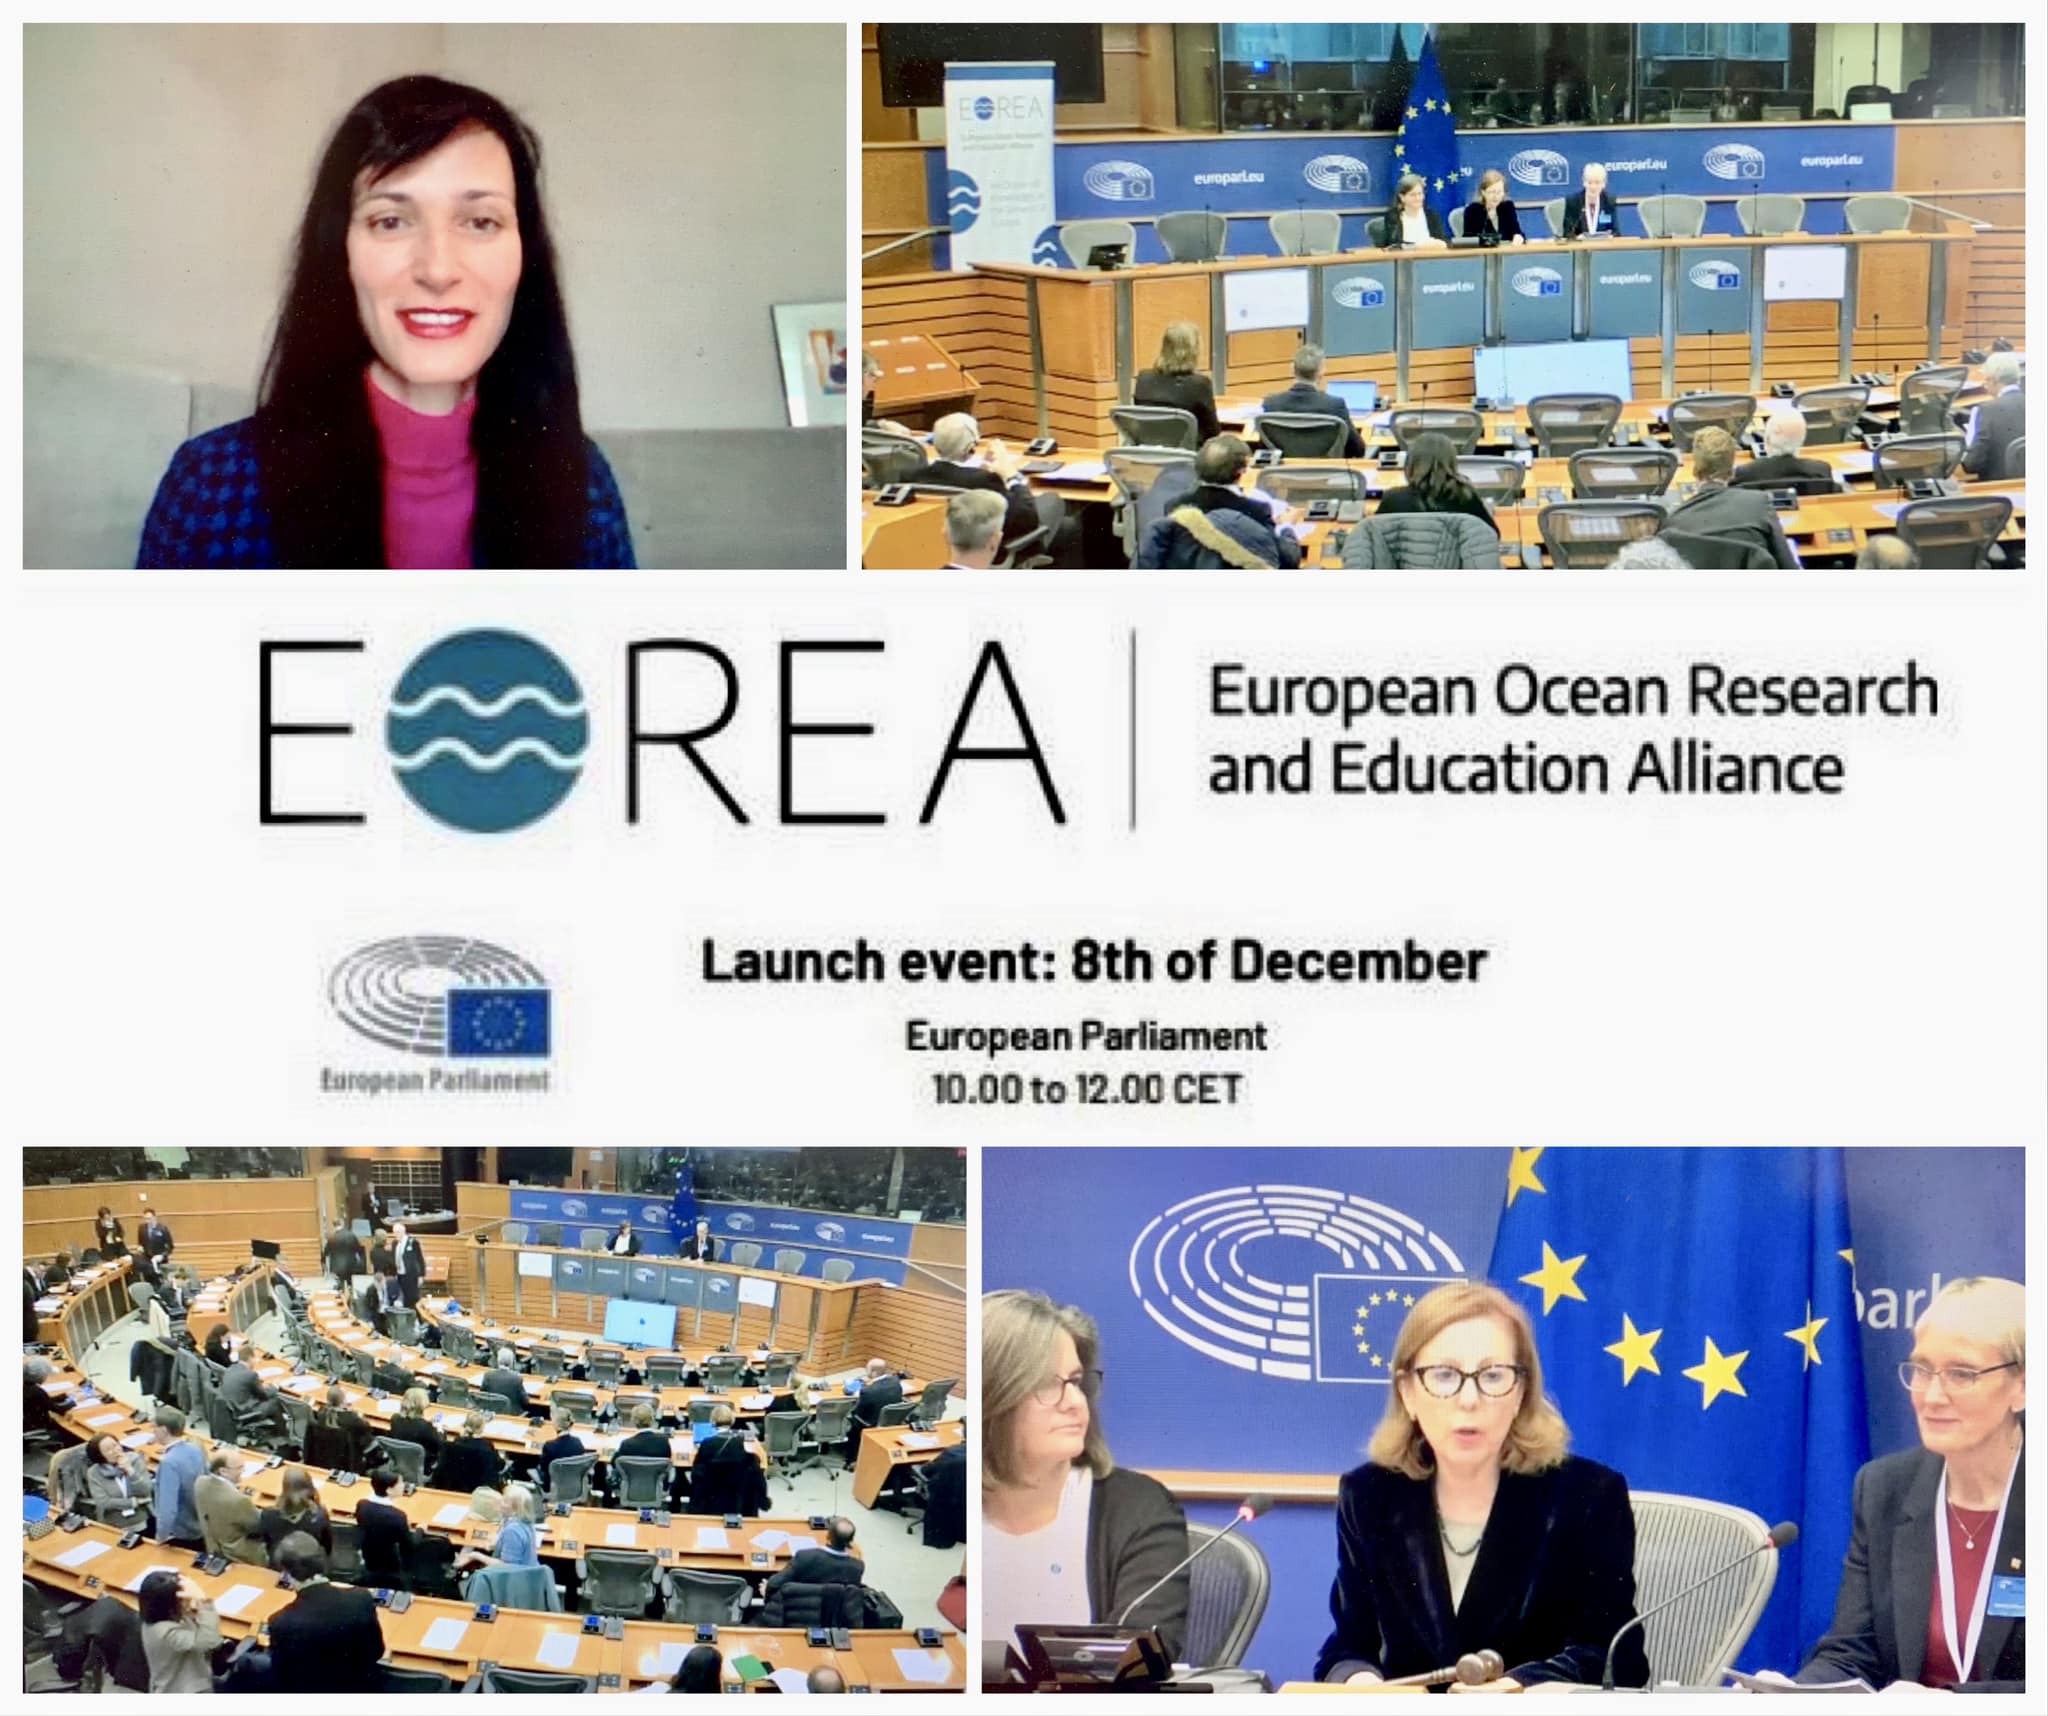 Alianța Europeană pentru Cercetare și Educație Oceanică, recent înființată